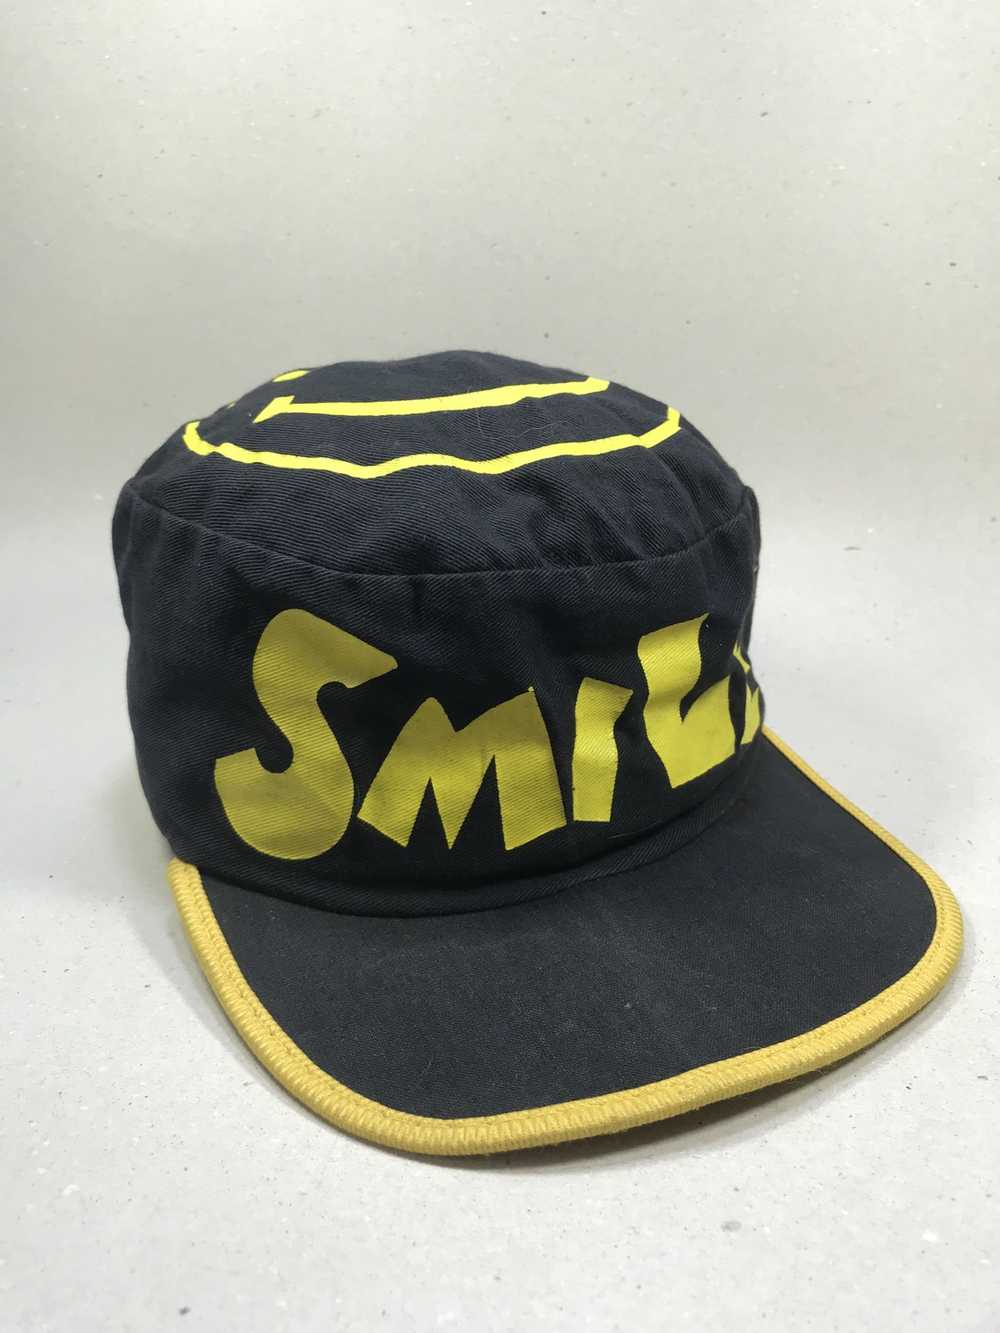 Vintage Smiley vtg hat - image 2